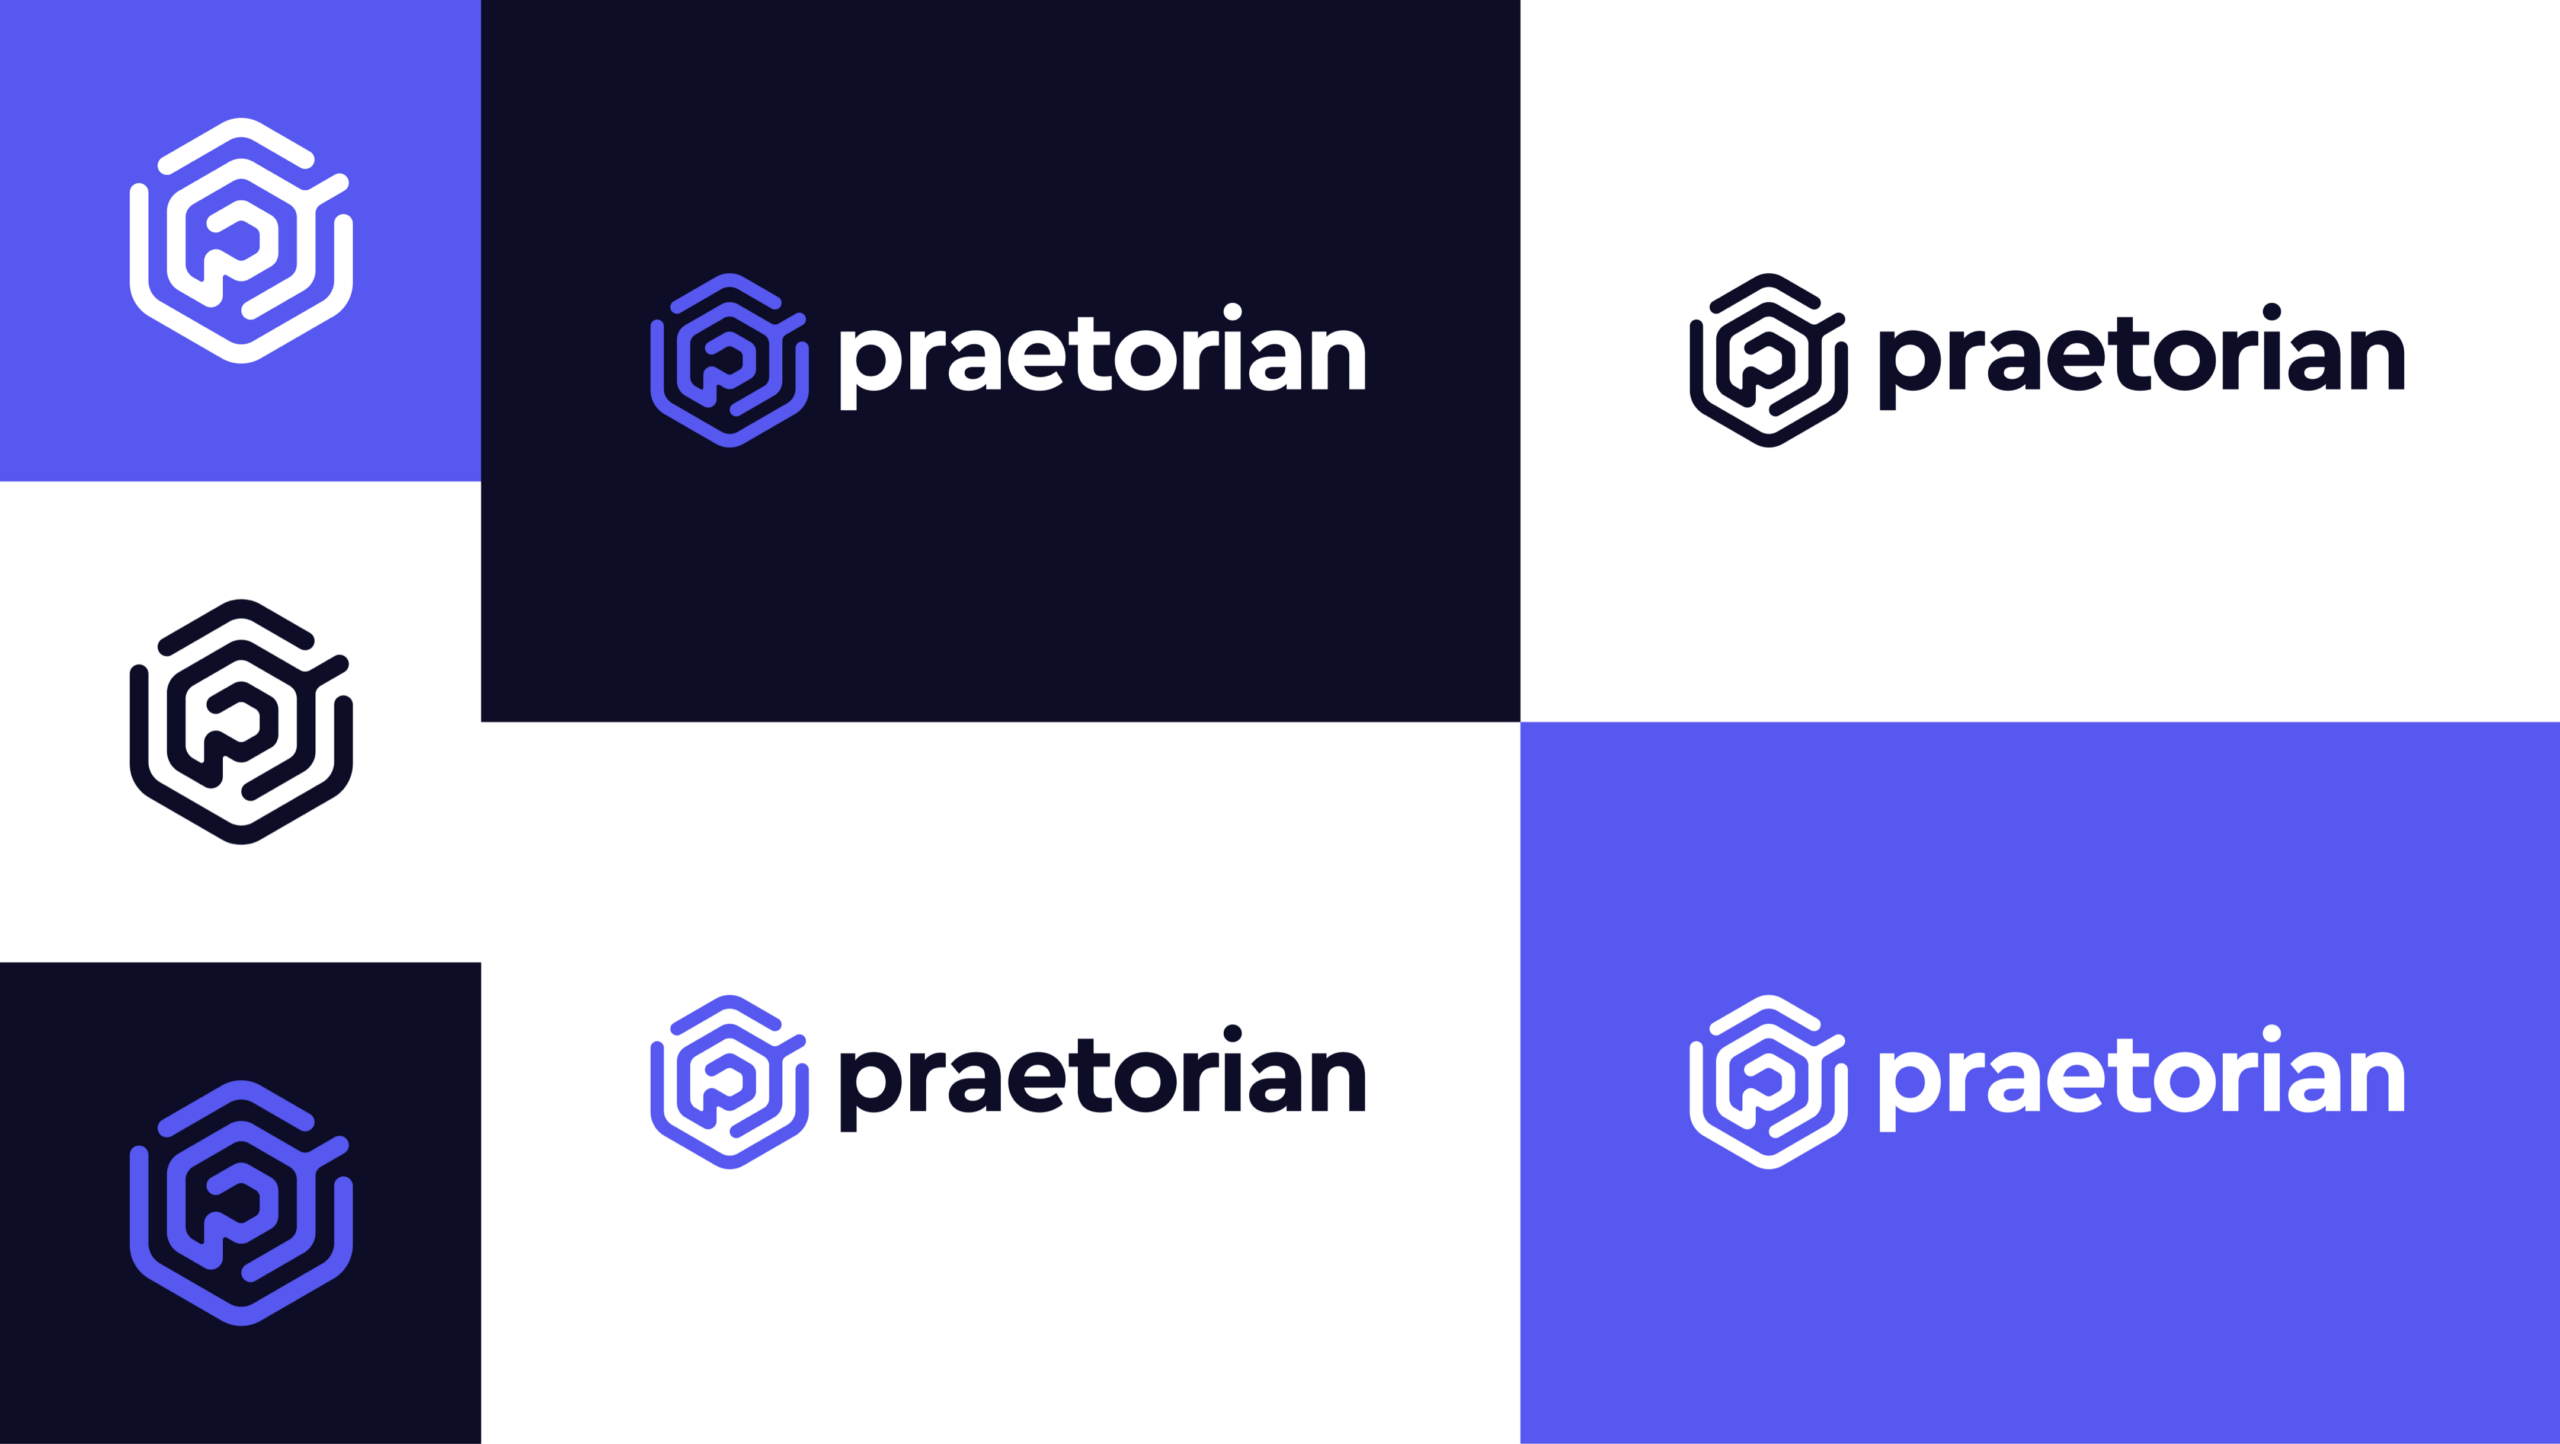 Praetorian Full Logo and Color Palette